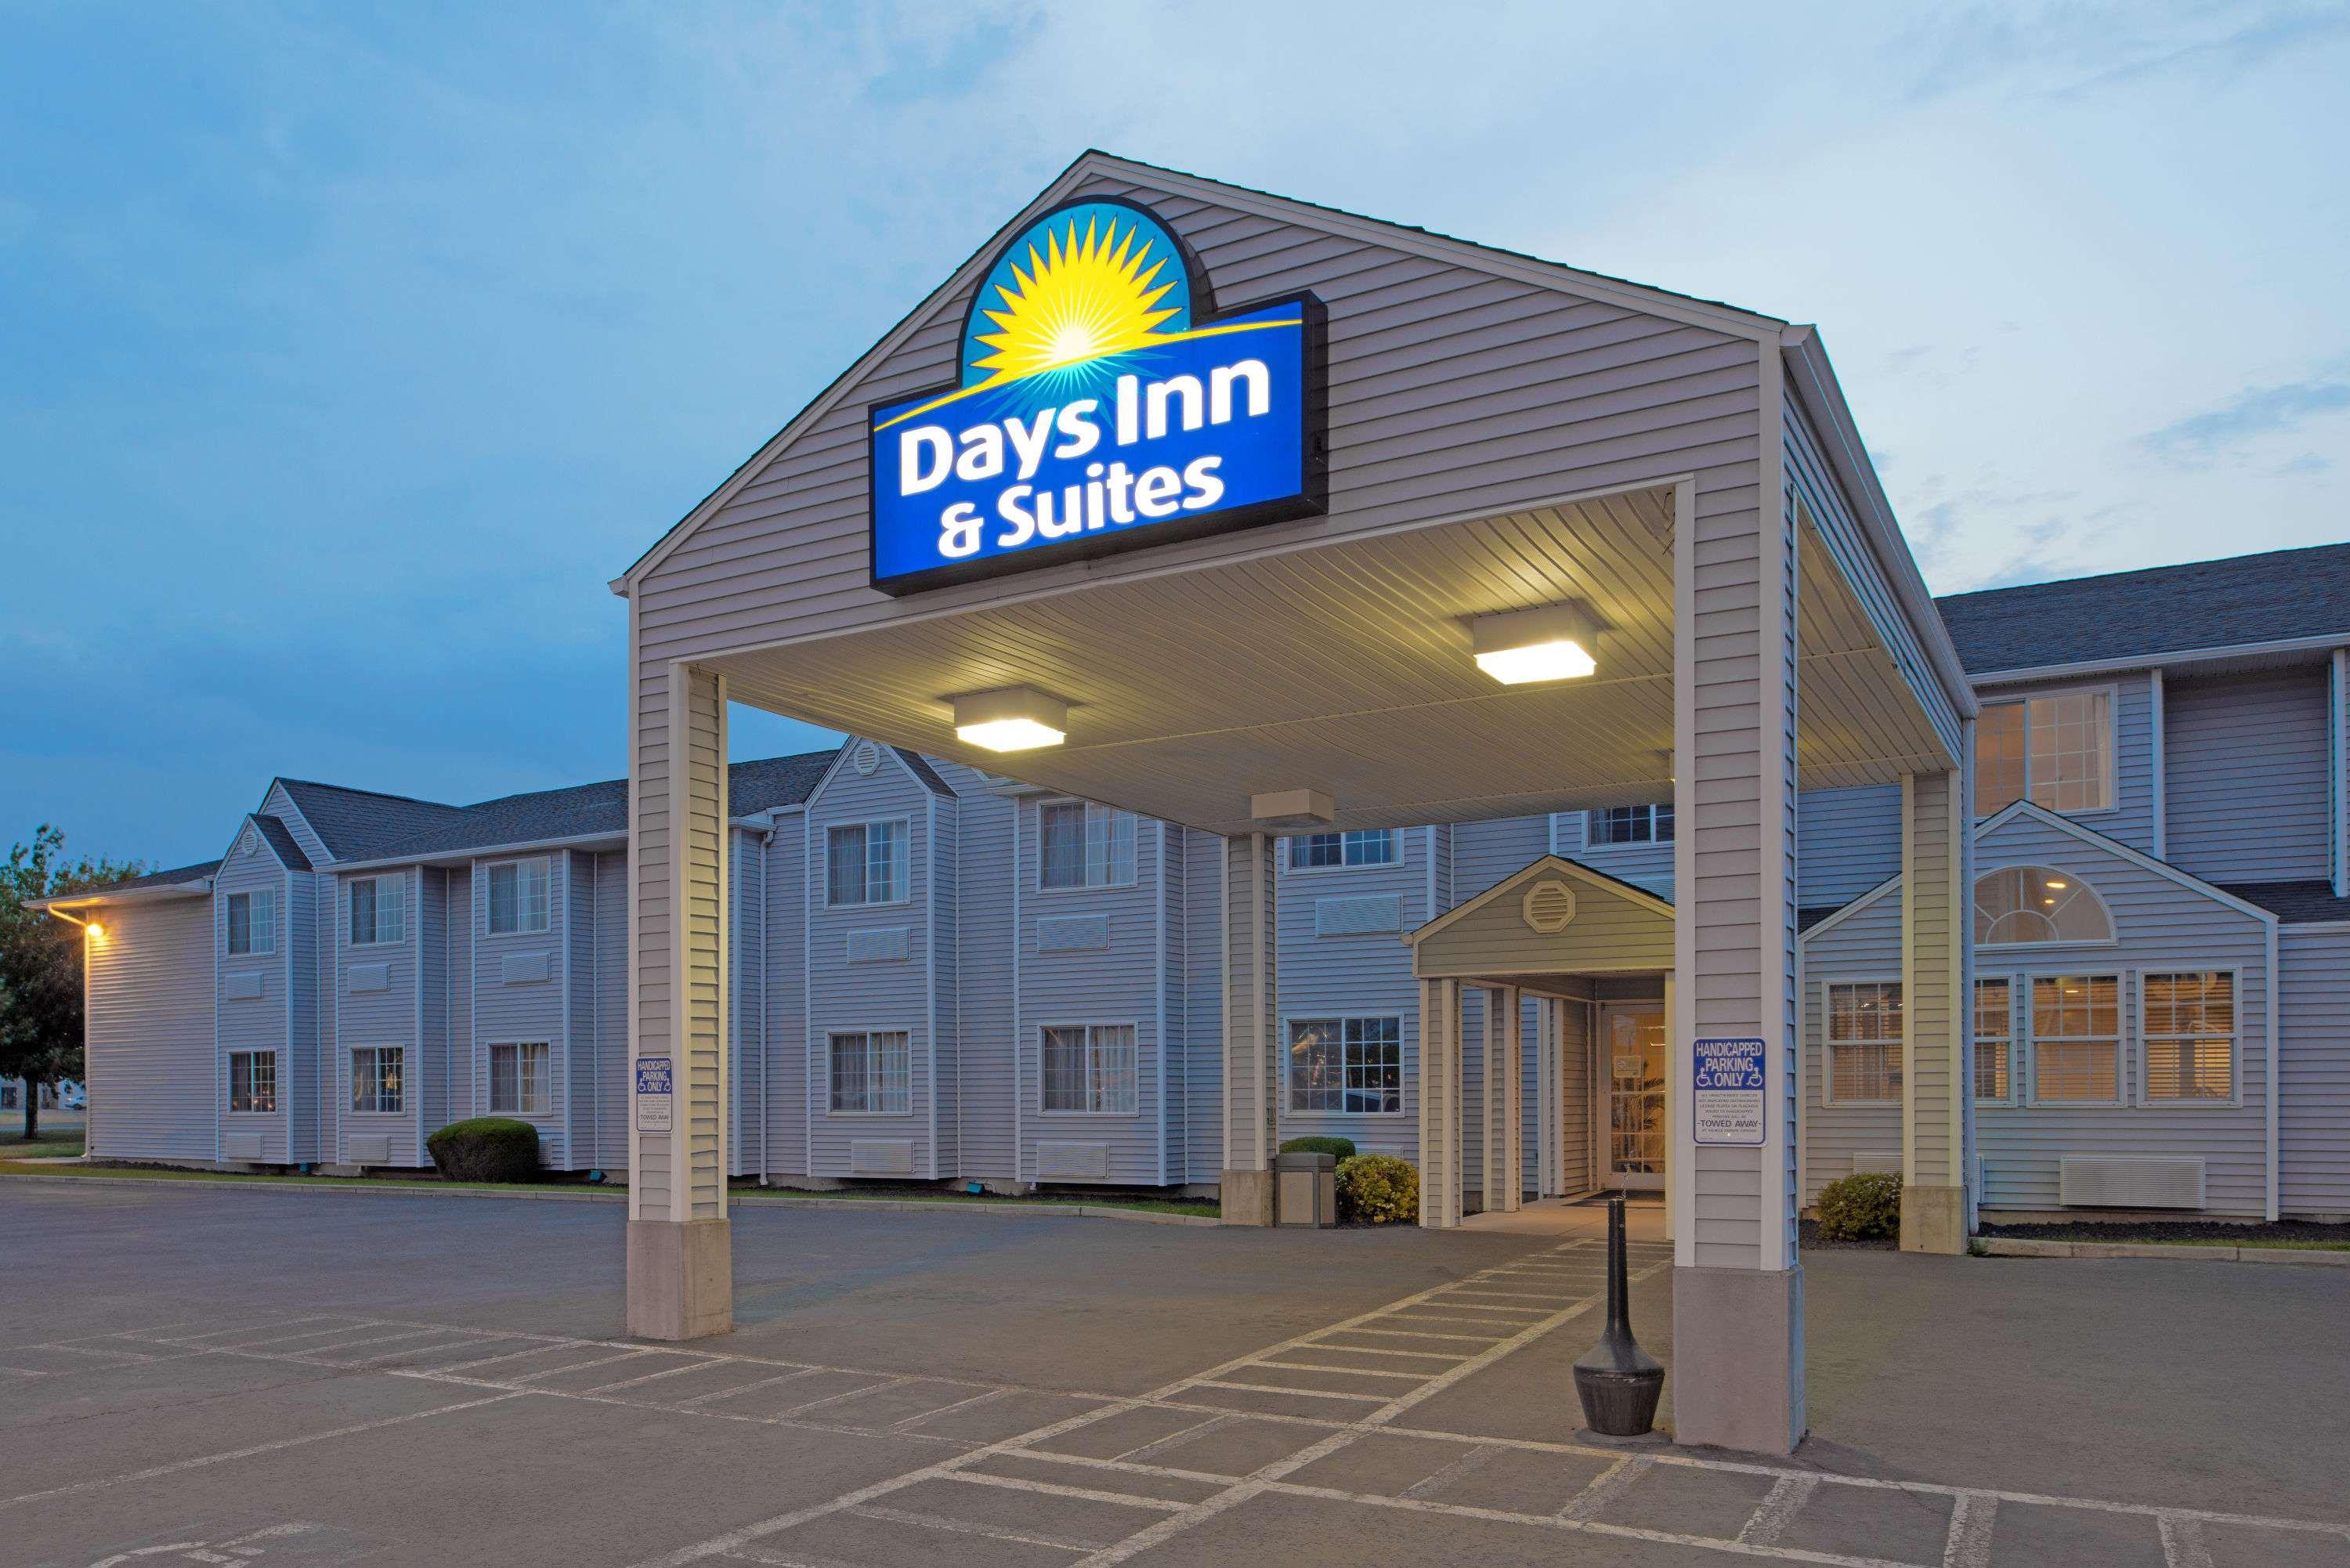 Days Inn & Suites by Wyndham Spokane Airport Airway Heights image